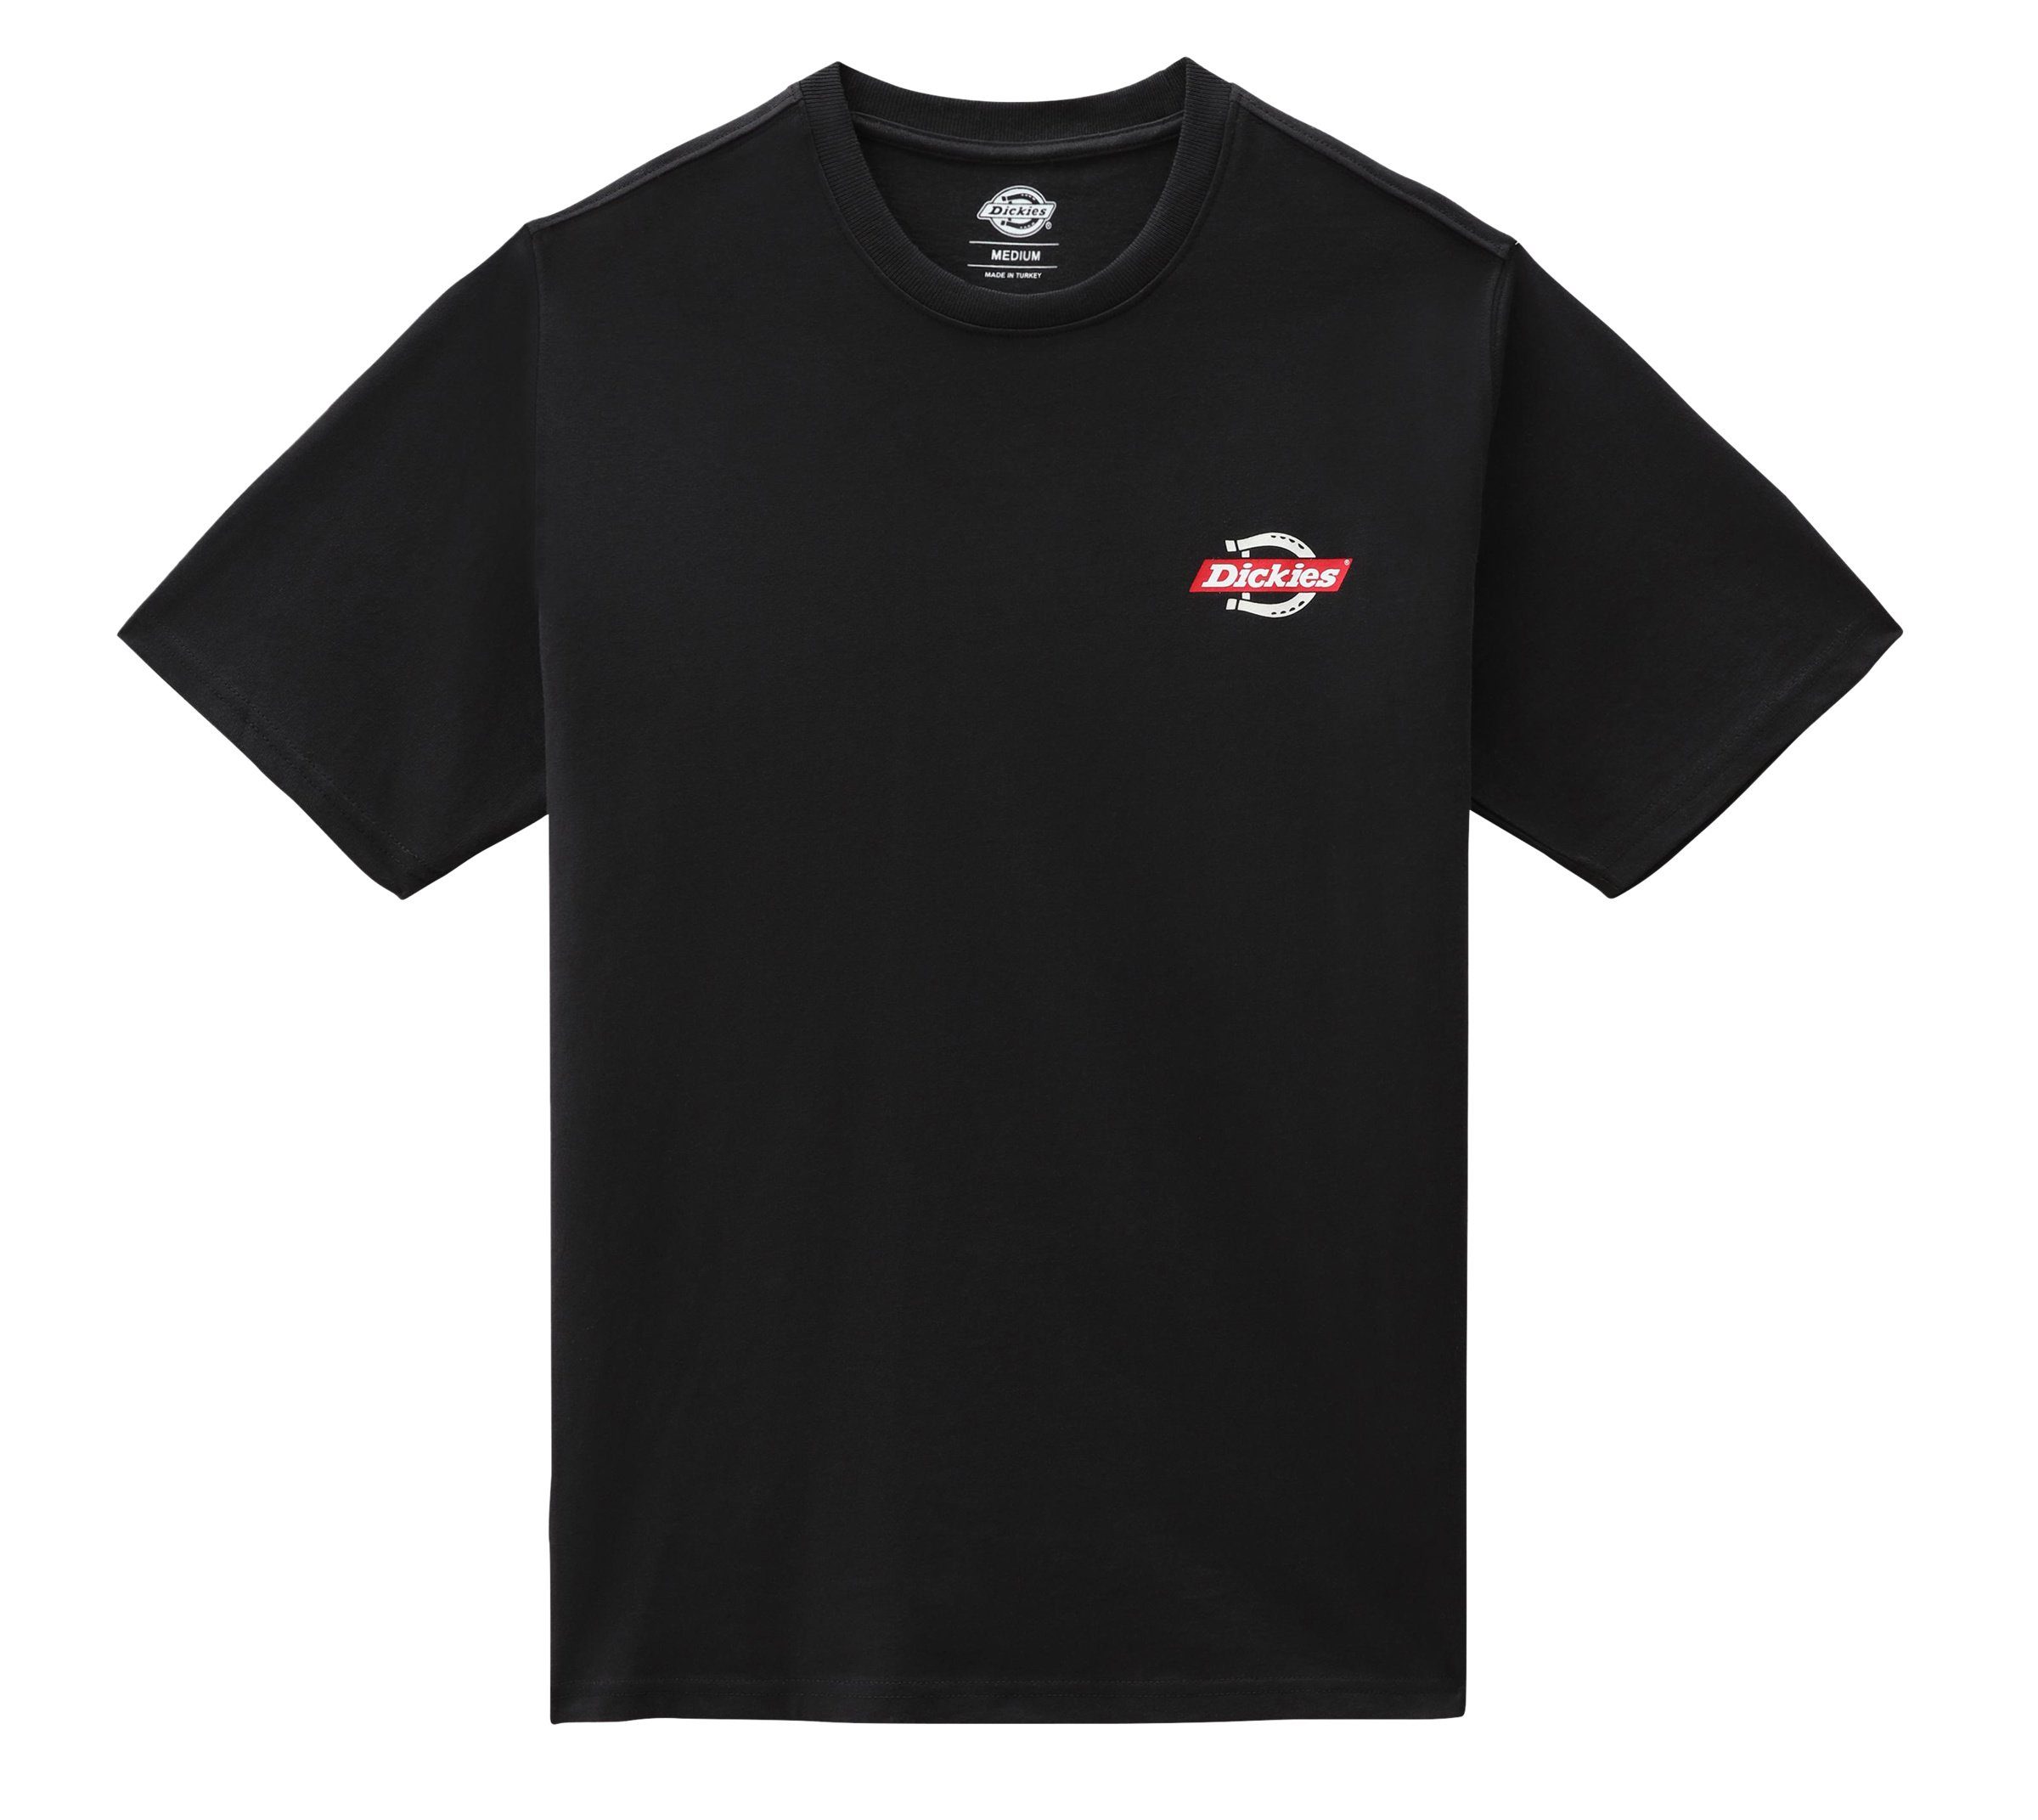 Ruston black Herren Dickies T-Shirt Dickies Adult T-Shirt